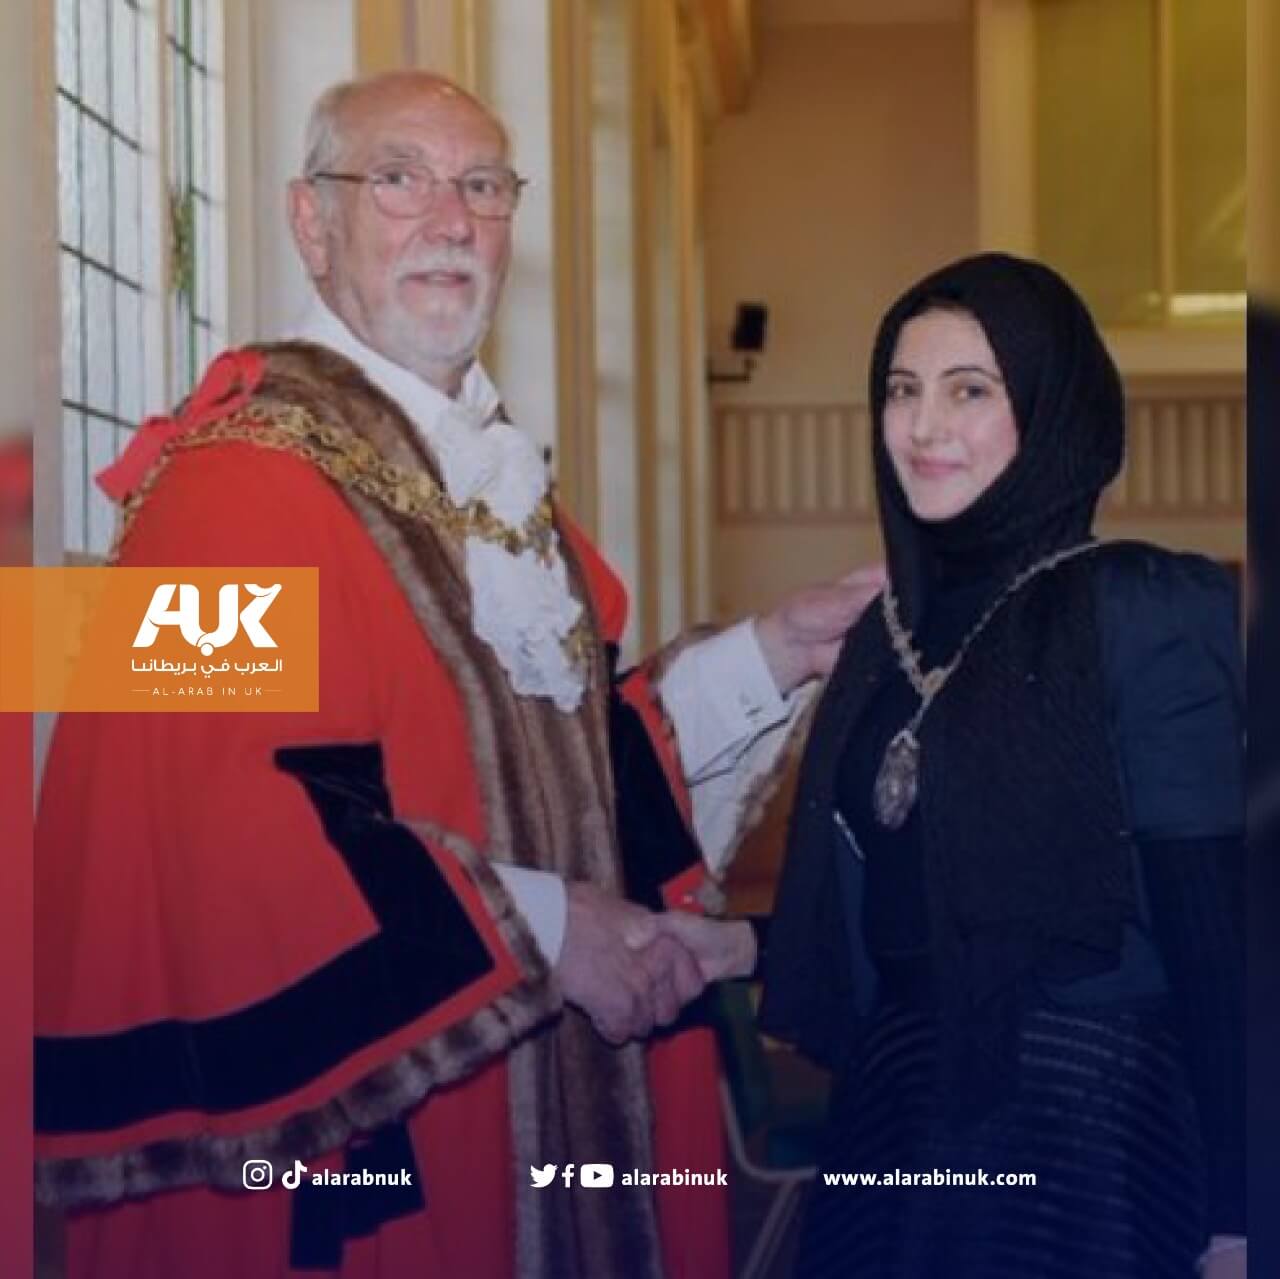 انتخاب أول امرأة مسلمة لمنصب نائب عمدة في بريطانيا